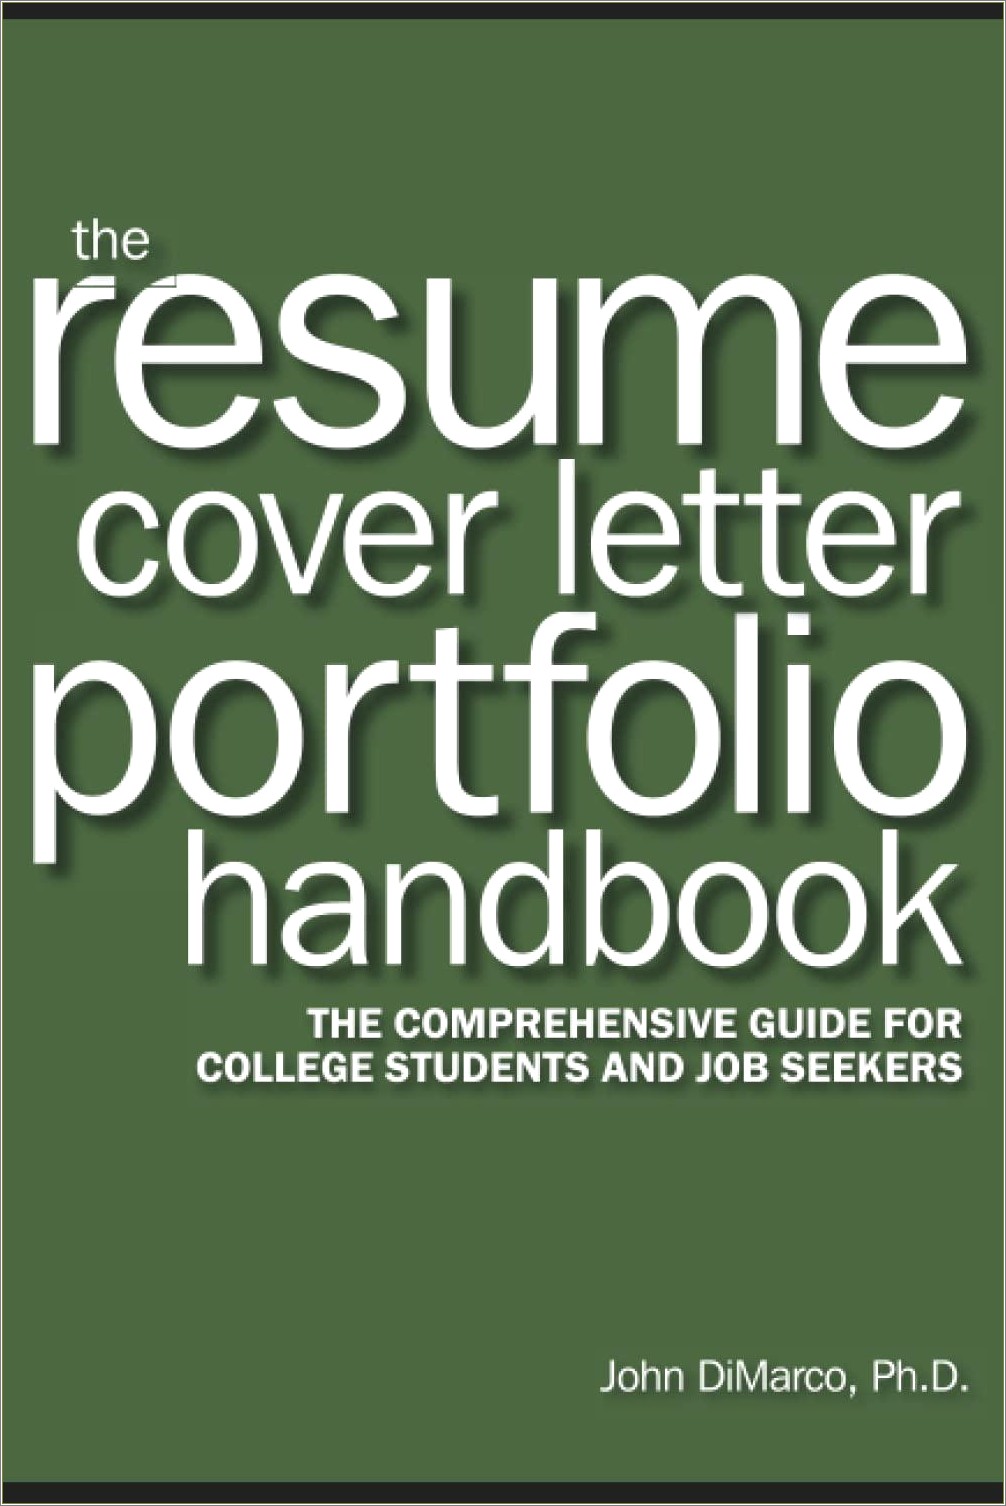 Put Portfolio In Resume Or Cover Letter